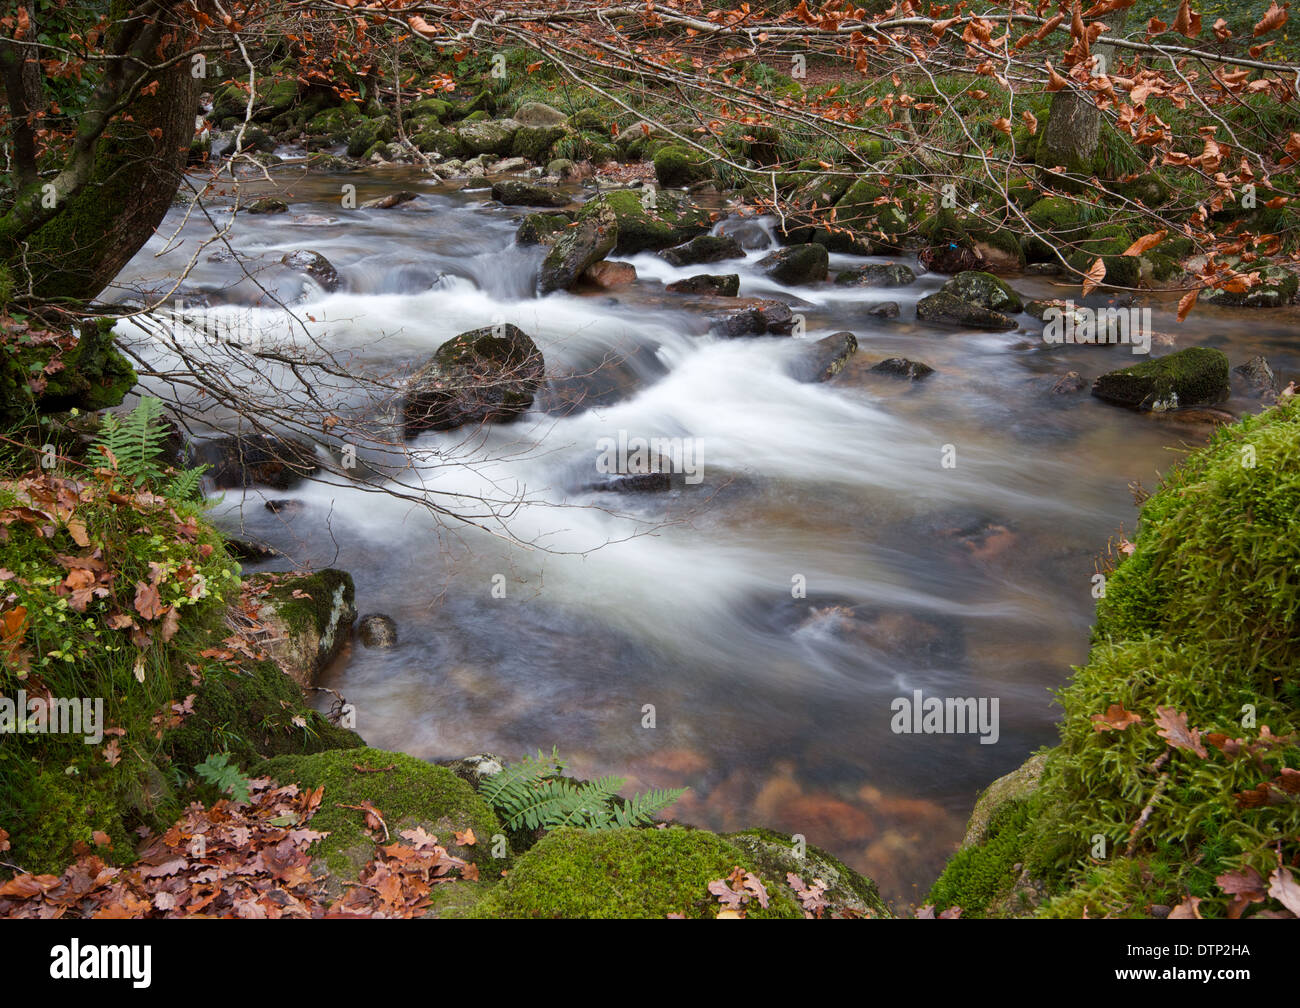 Fluß Plym bei Dewerstone auf Dartmoor in England Stockfoto